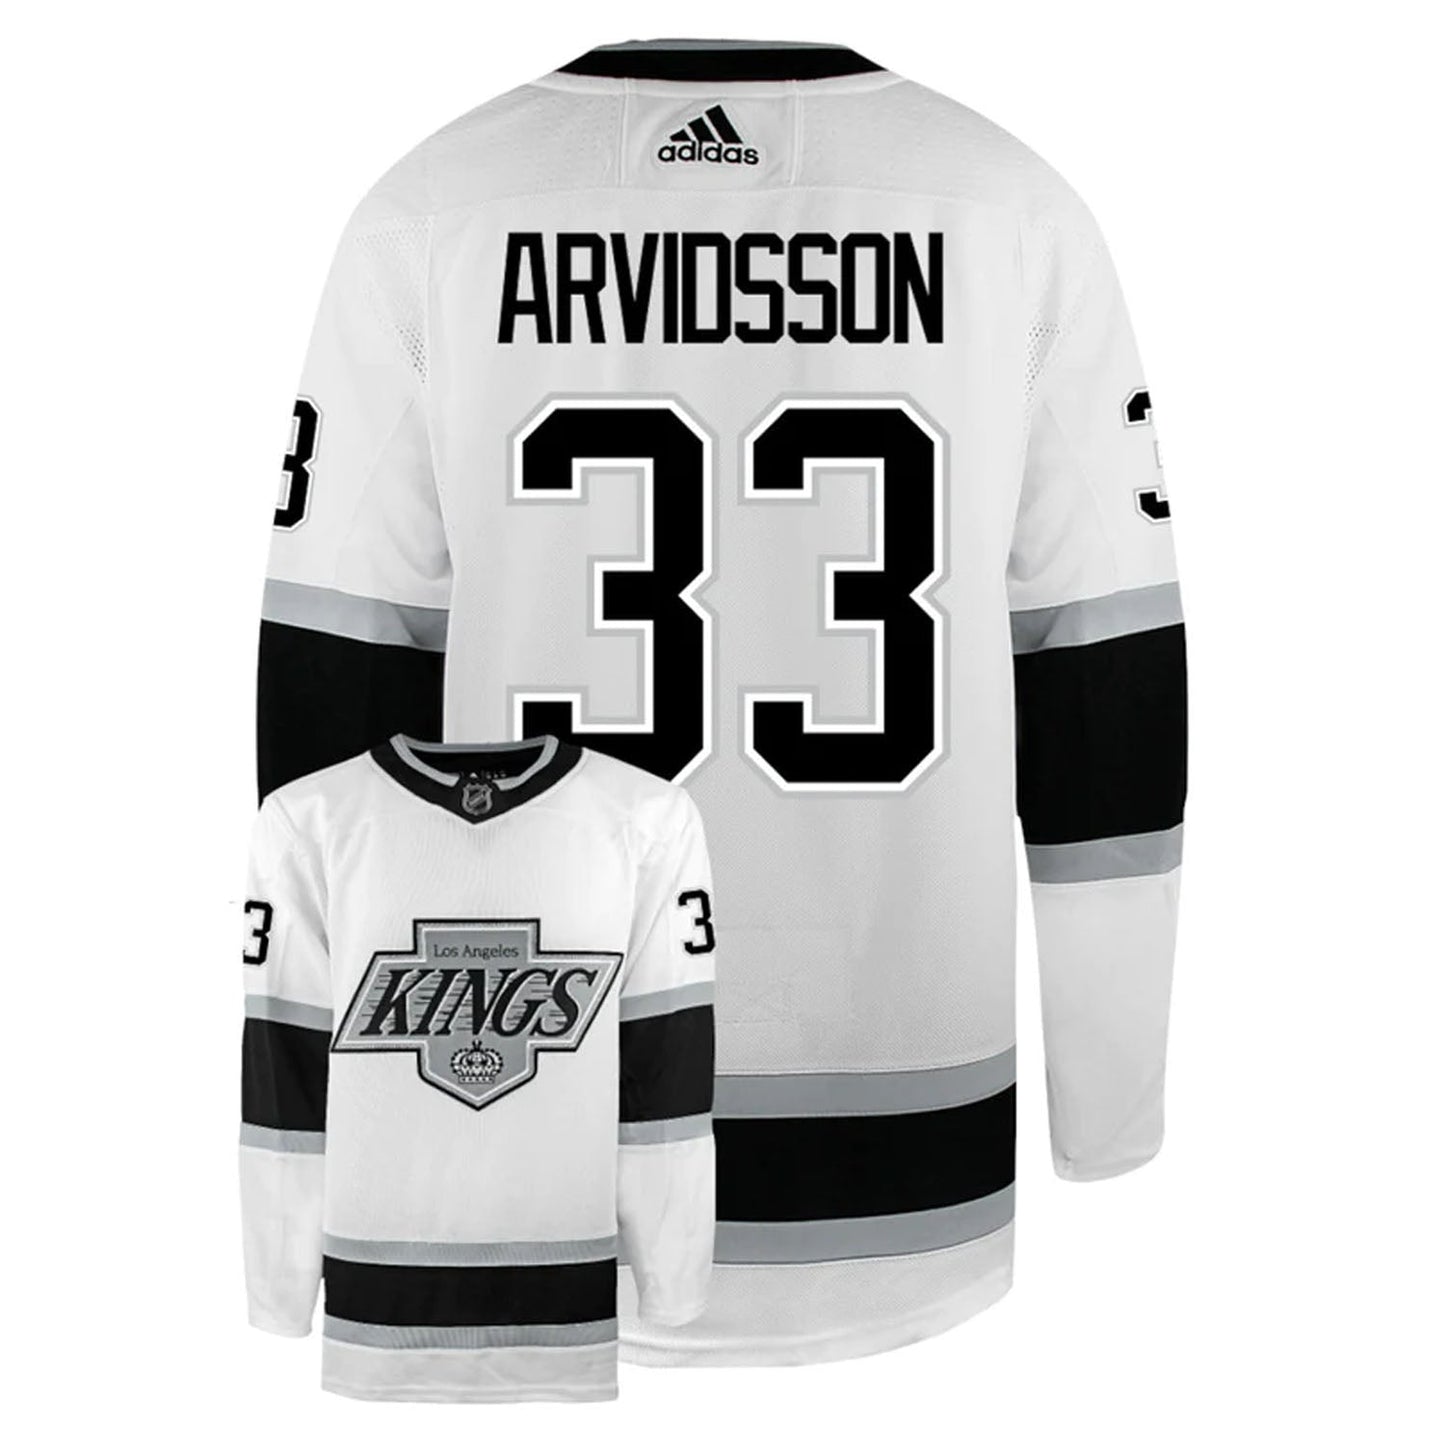 NHL Viktor Arvidsson Los Angeles Kings 33 Jersey